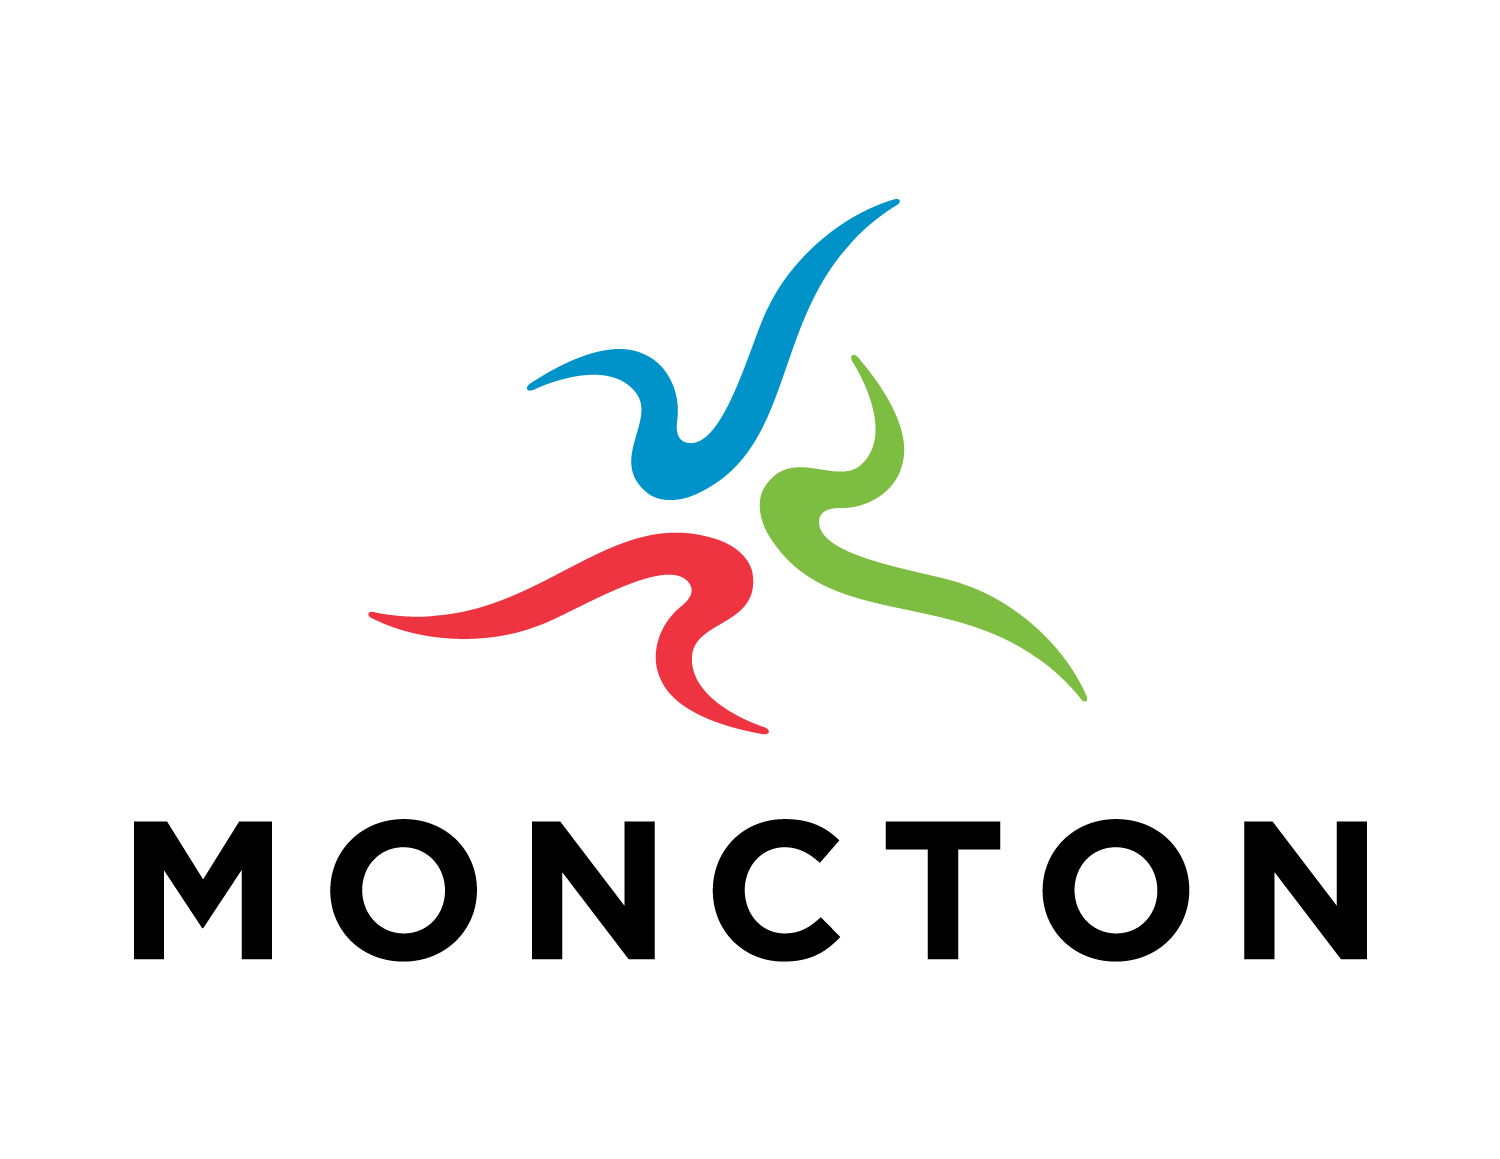 Moncton logo